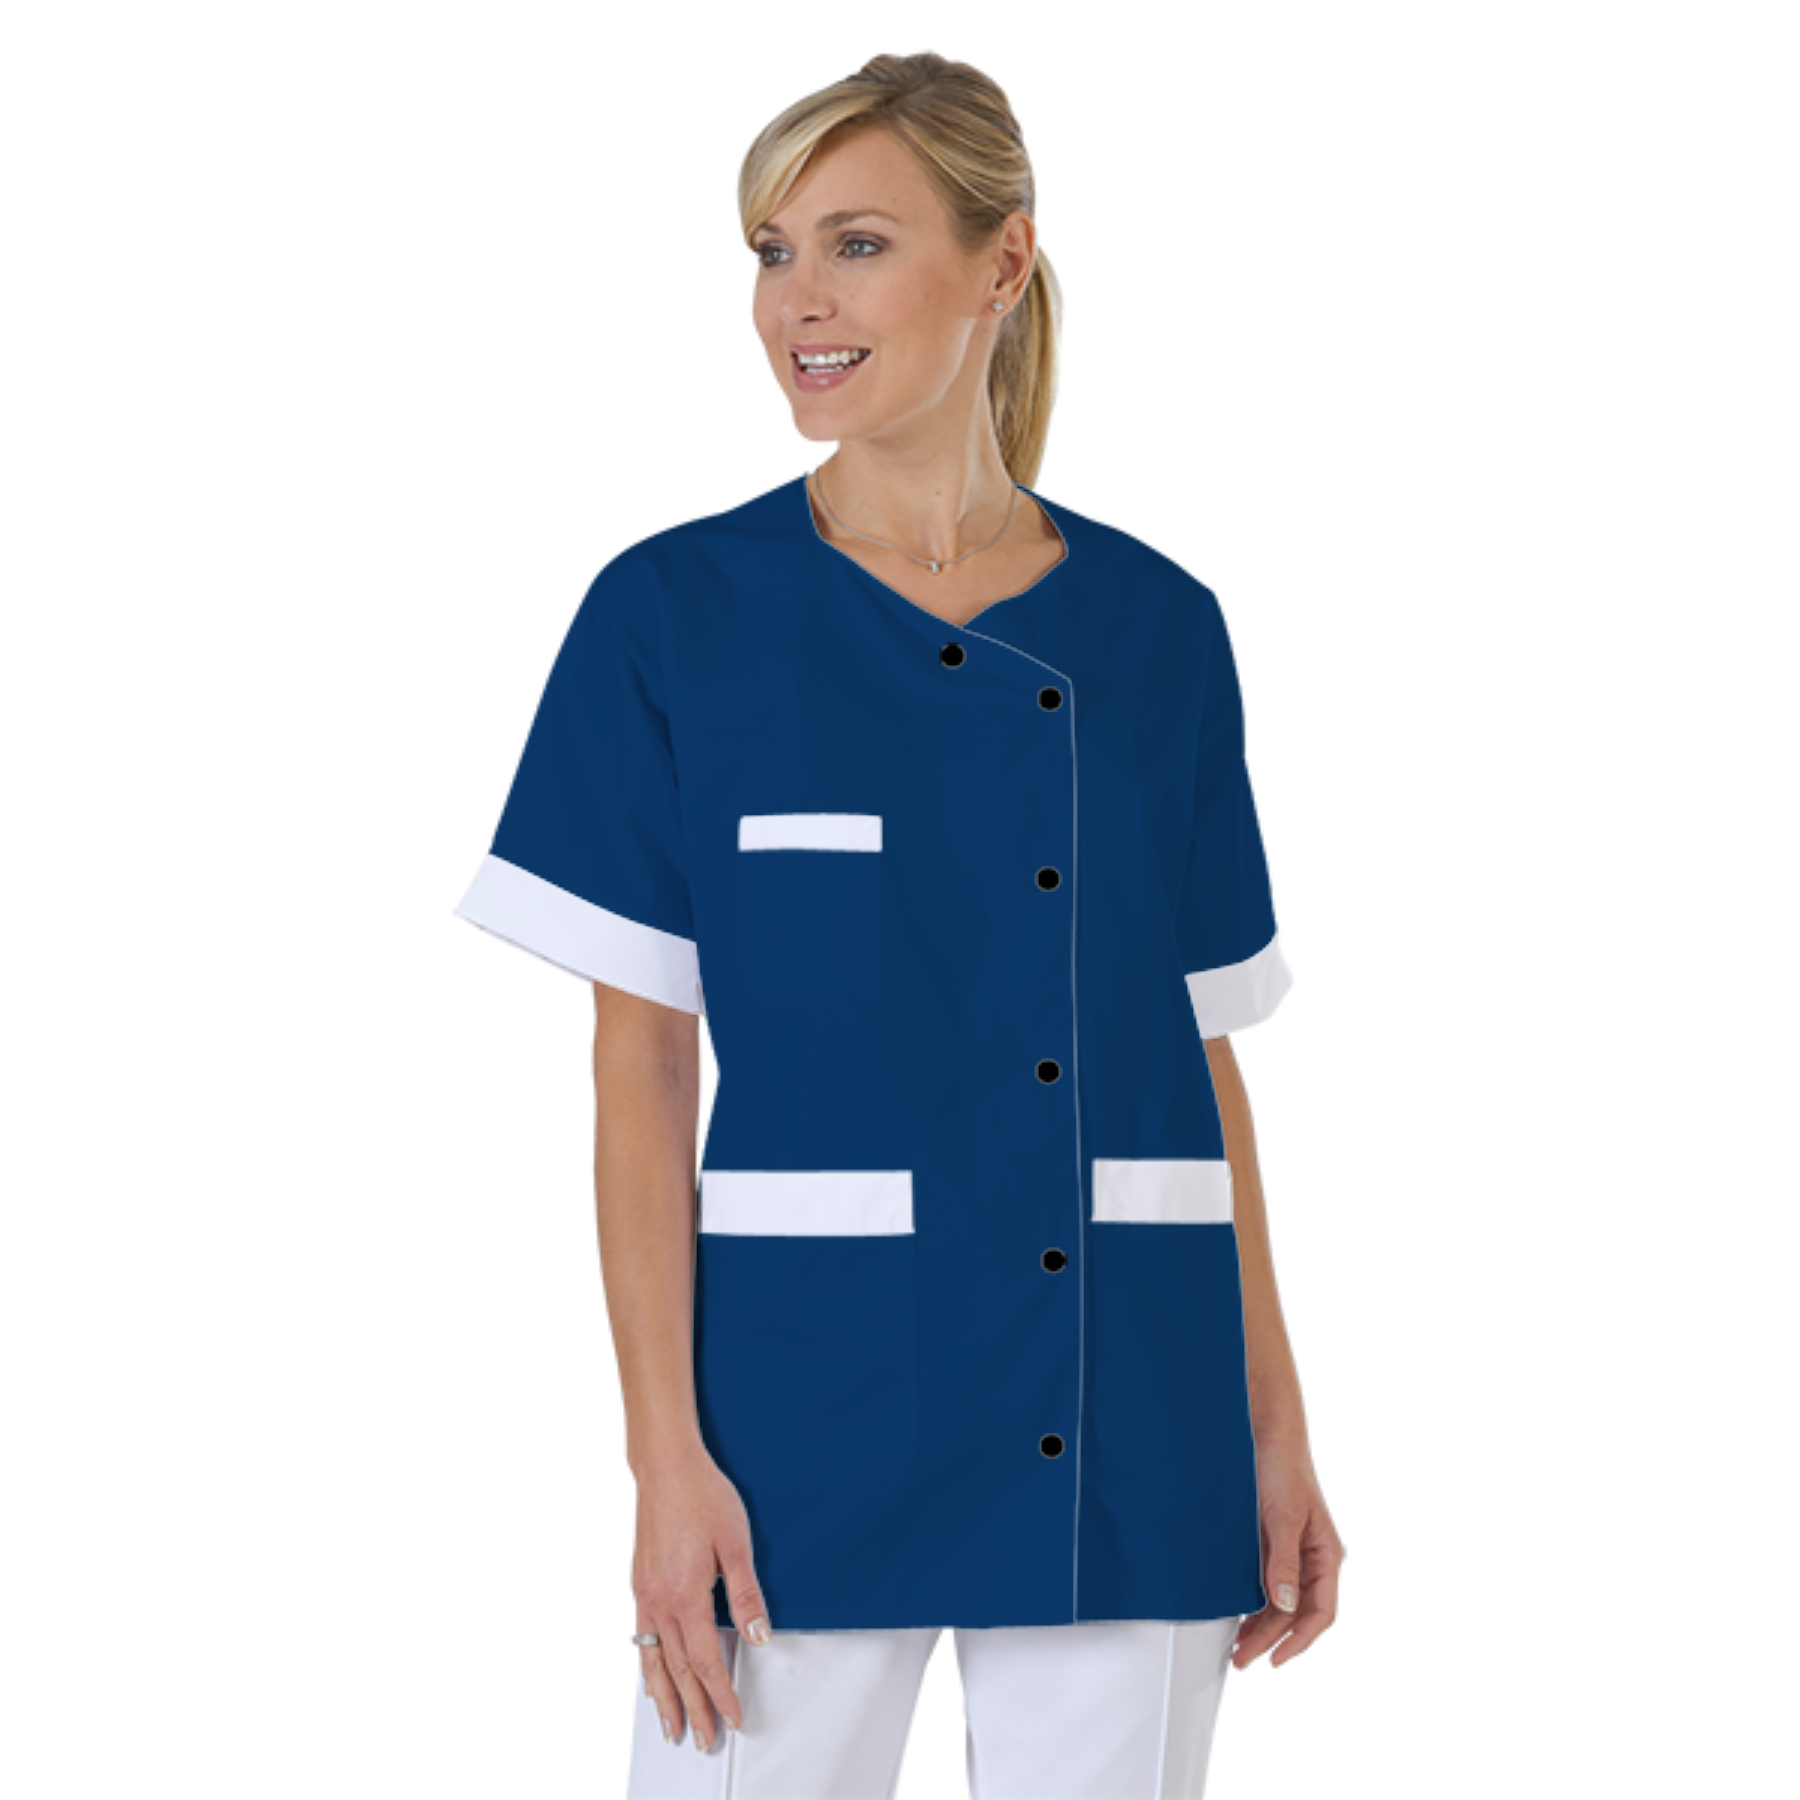 blouse-infirmiere-personnalise-col-trapeze acheté - par Camille - le 01-09-2021